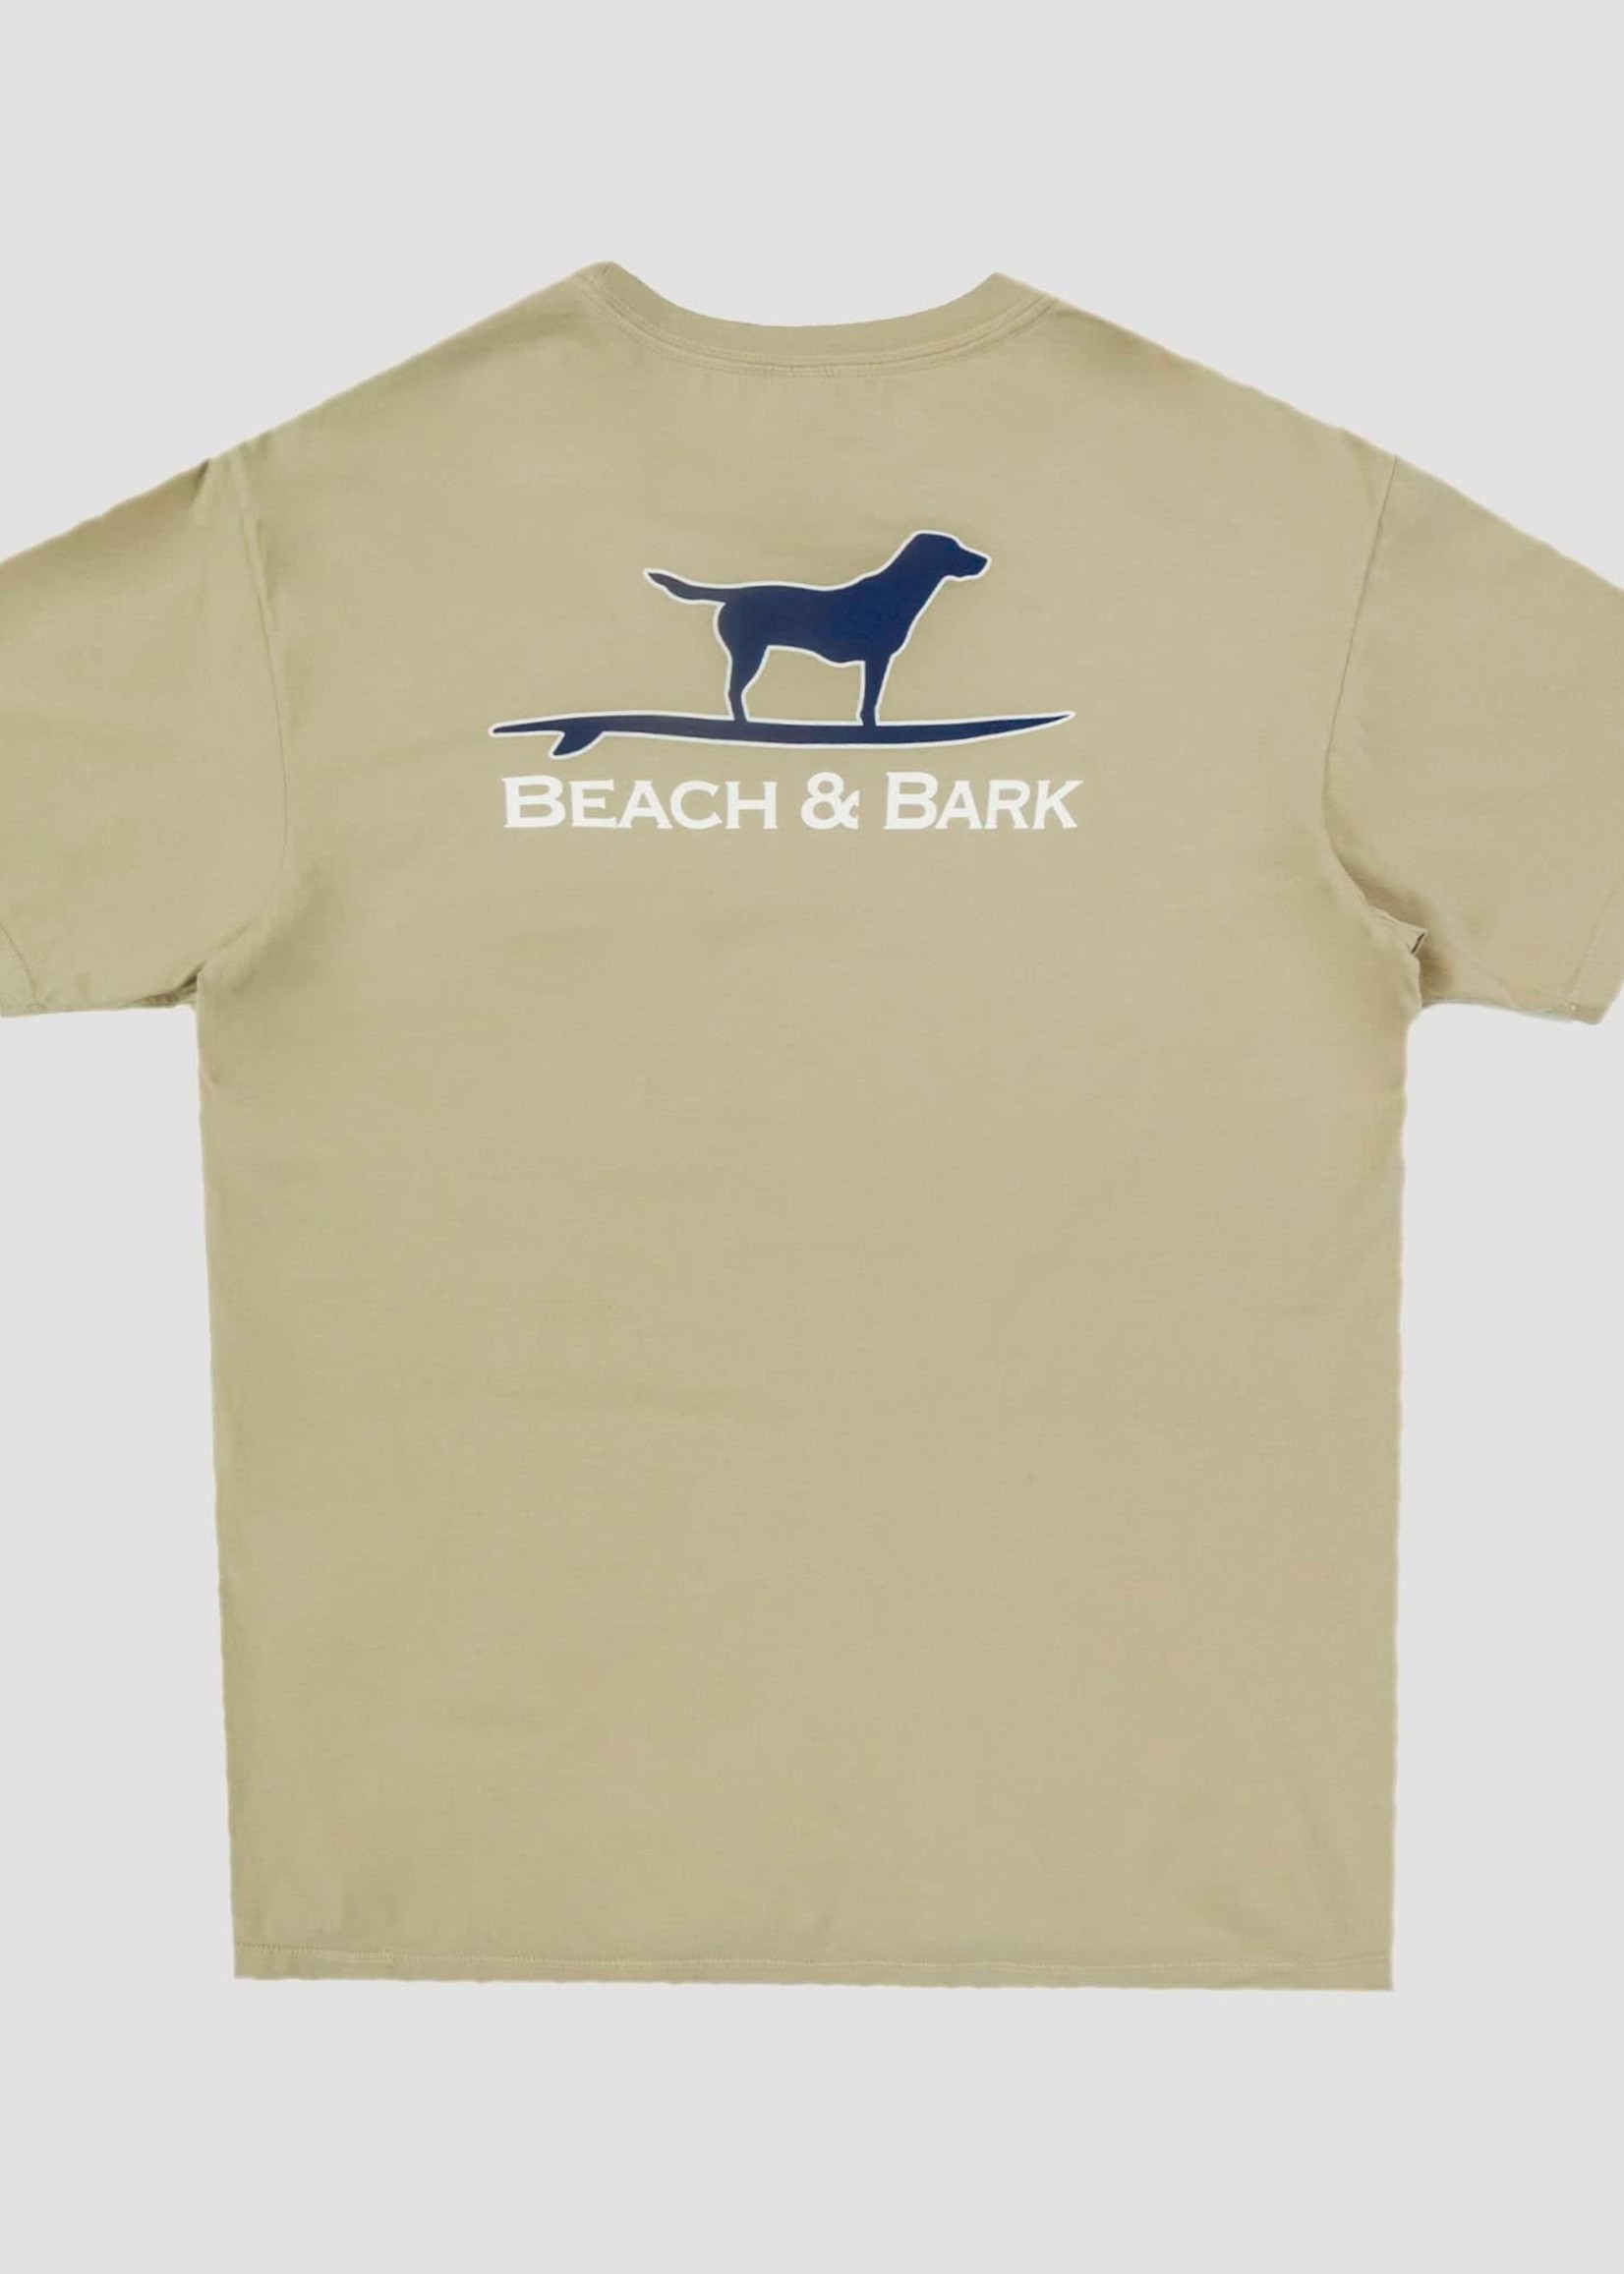 Beach and Barn Beach & Bark